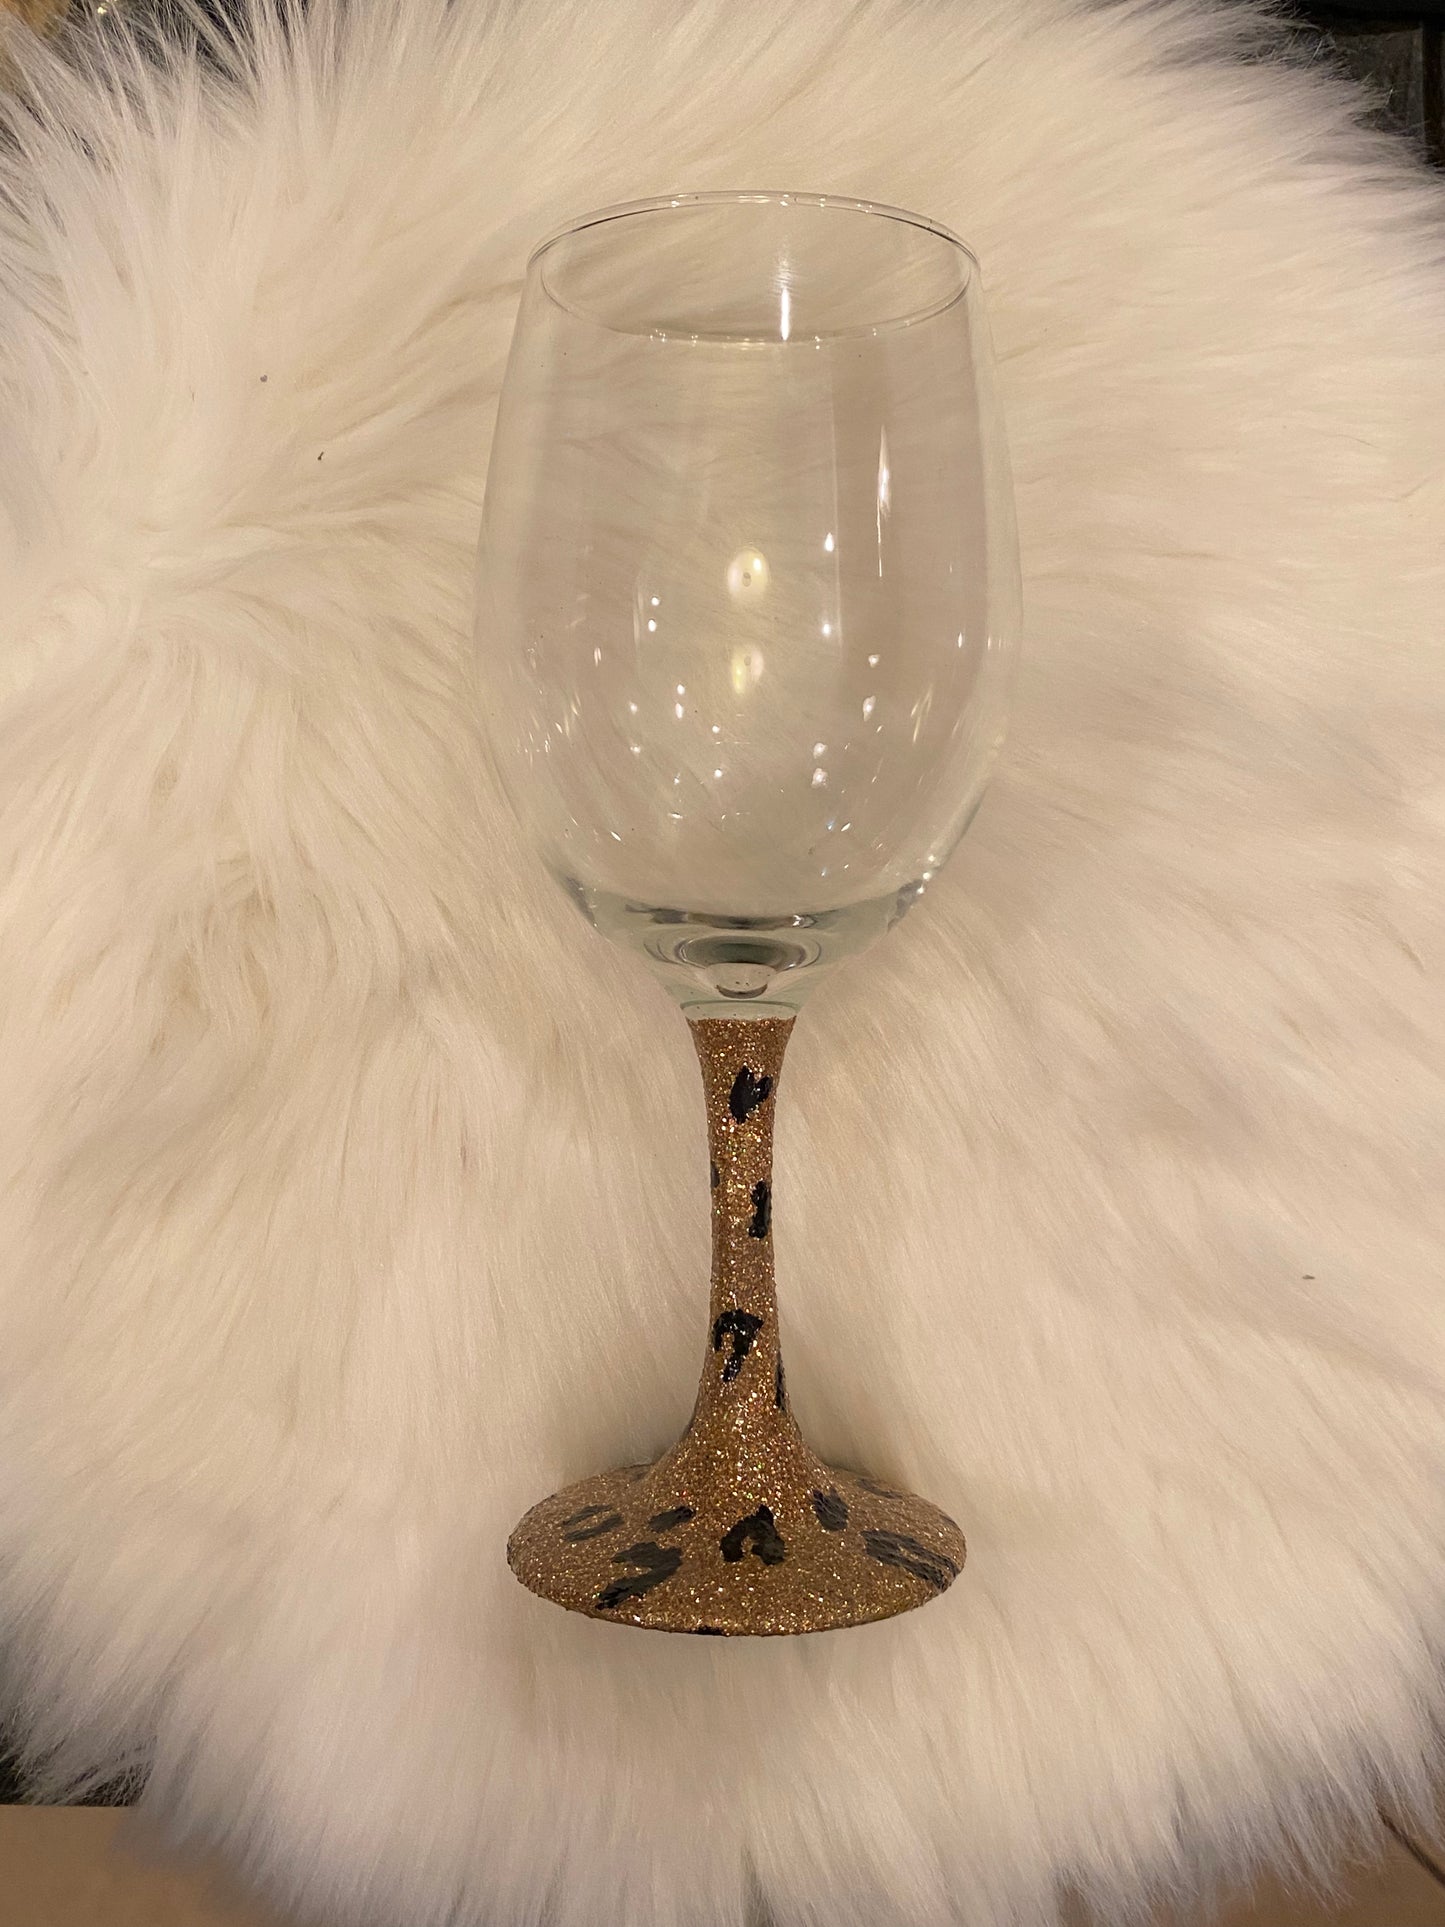 Custom glitter stemmed wine glass